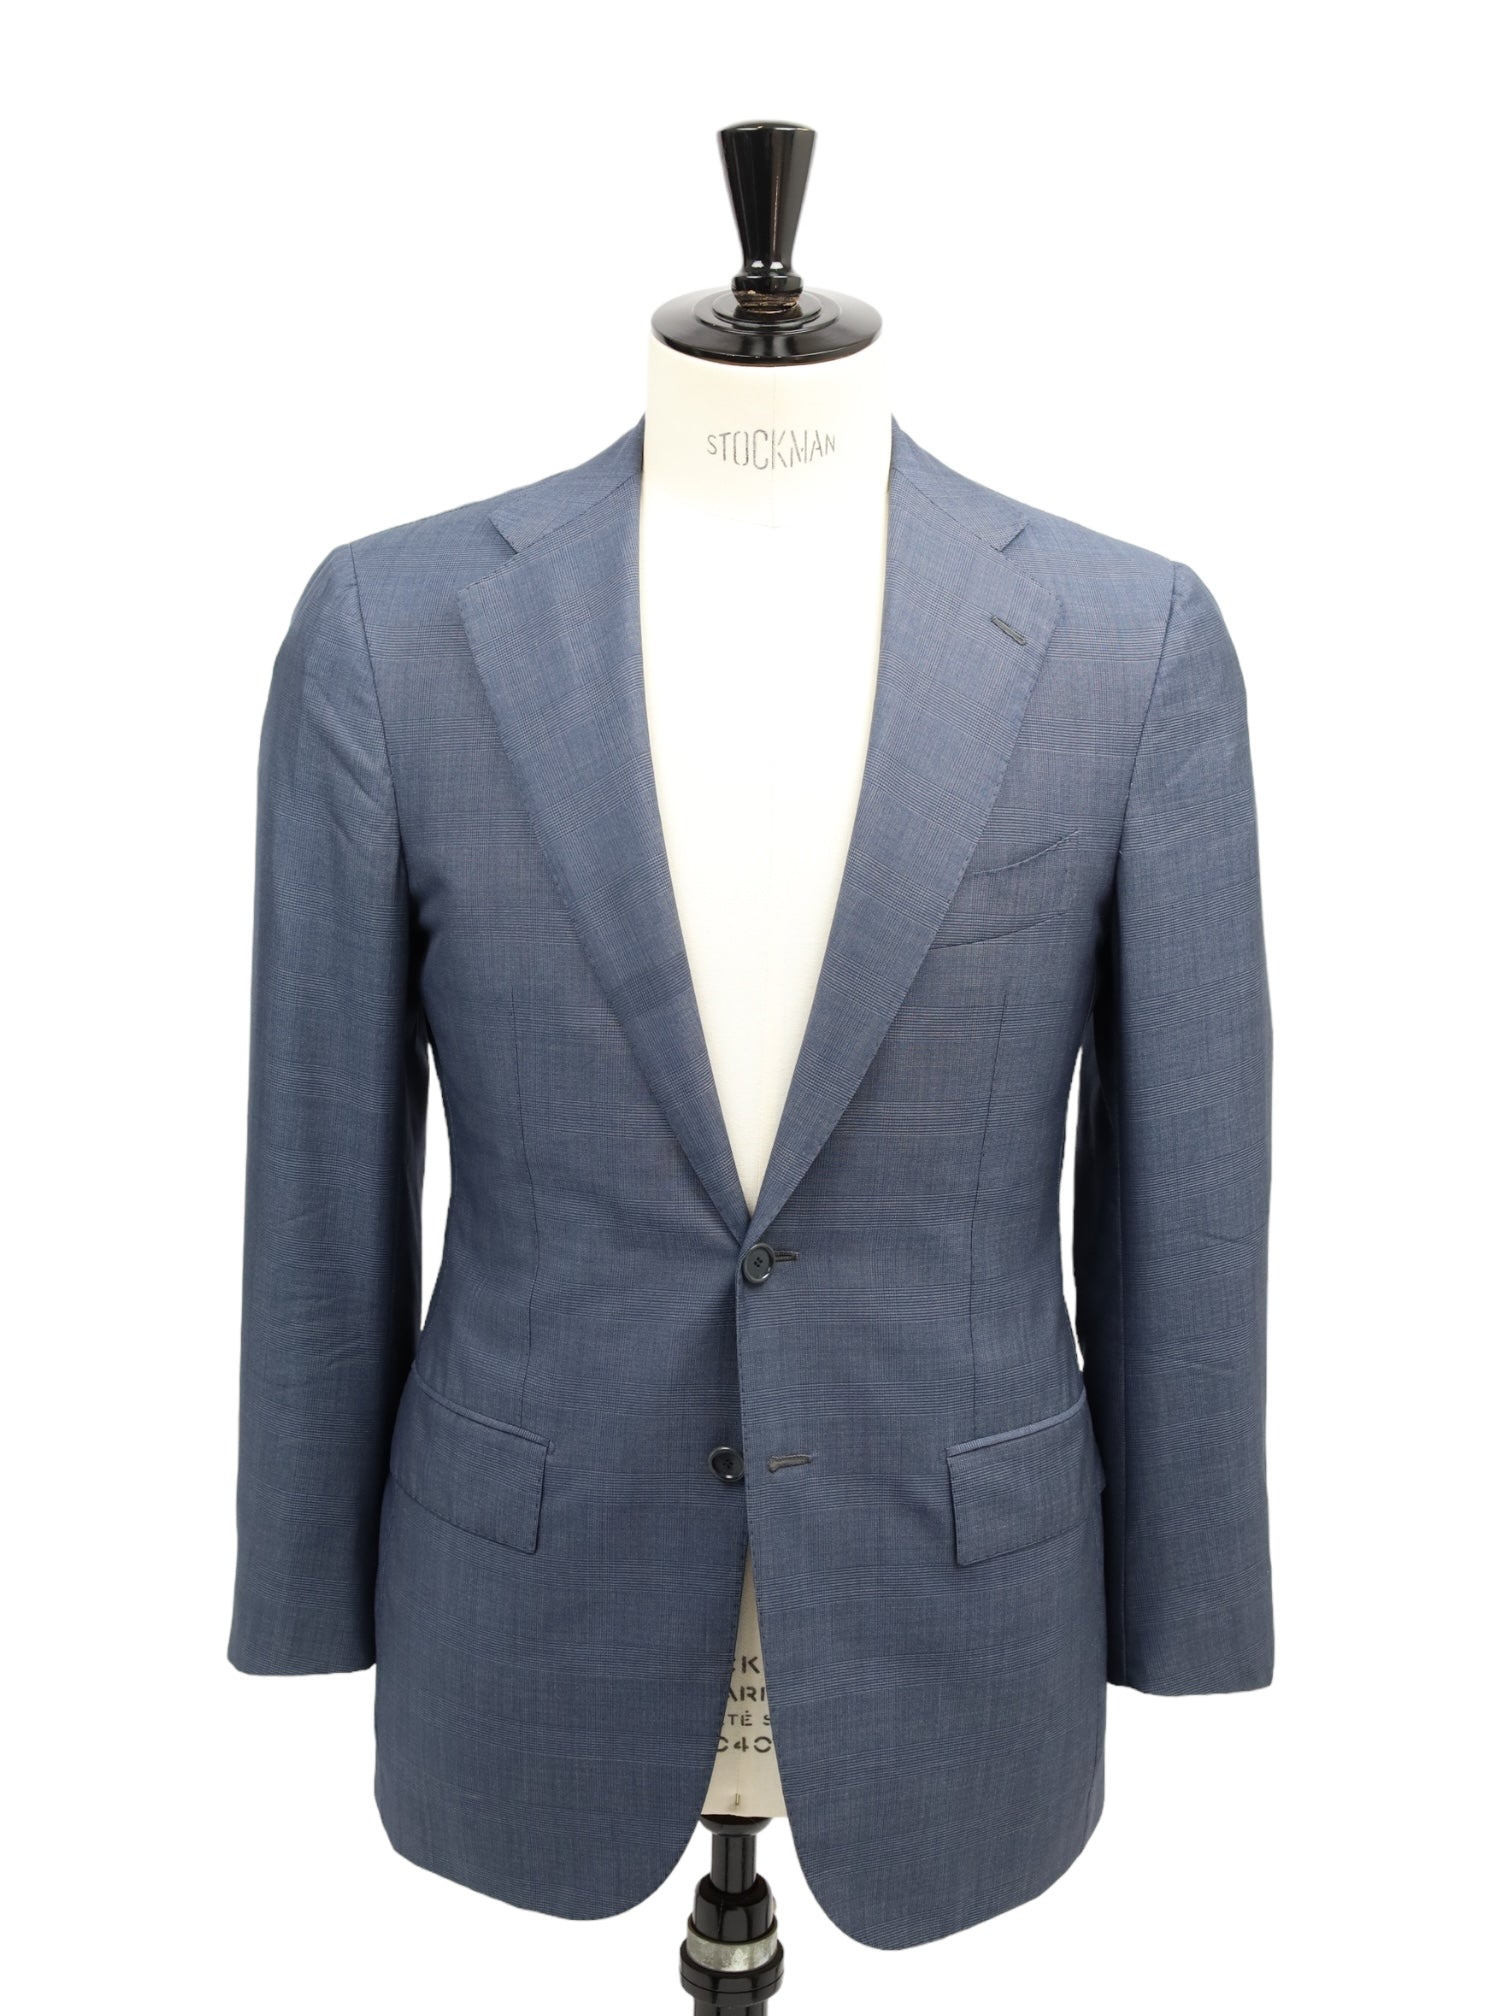 Cesare Attolini leisteenblauw wol- en zijden Glenplaid-pak